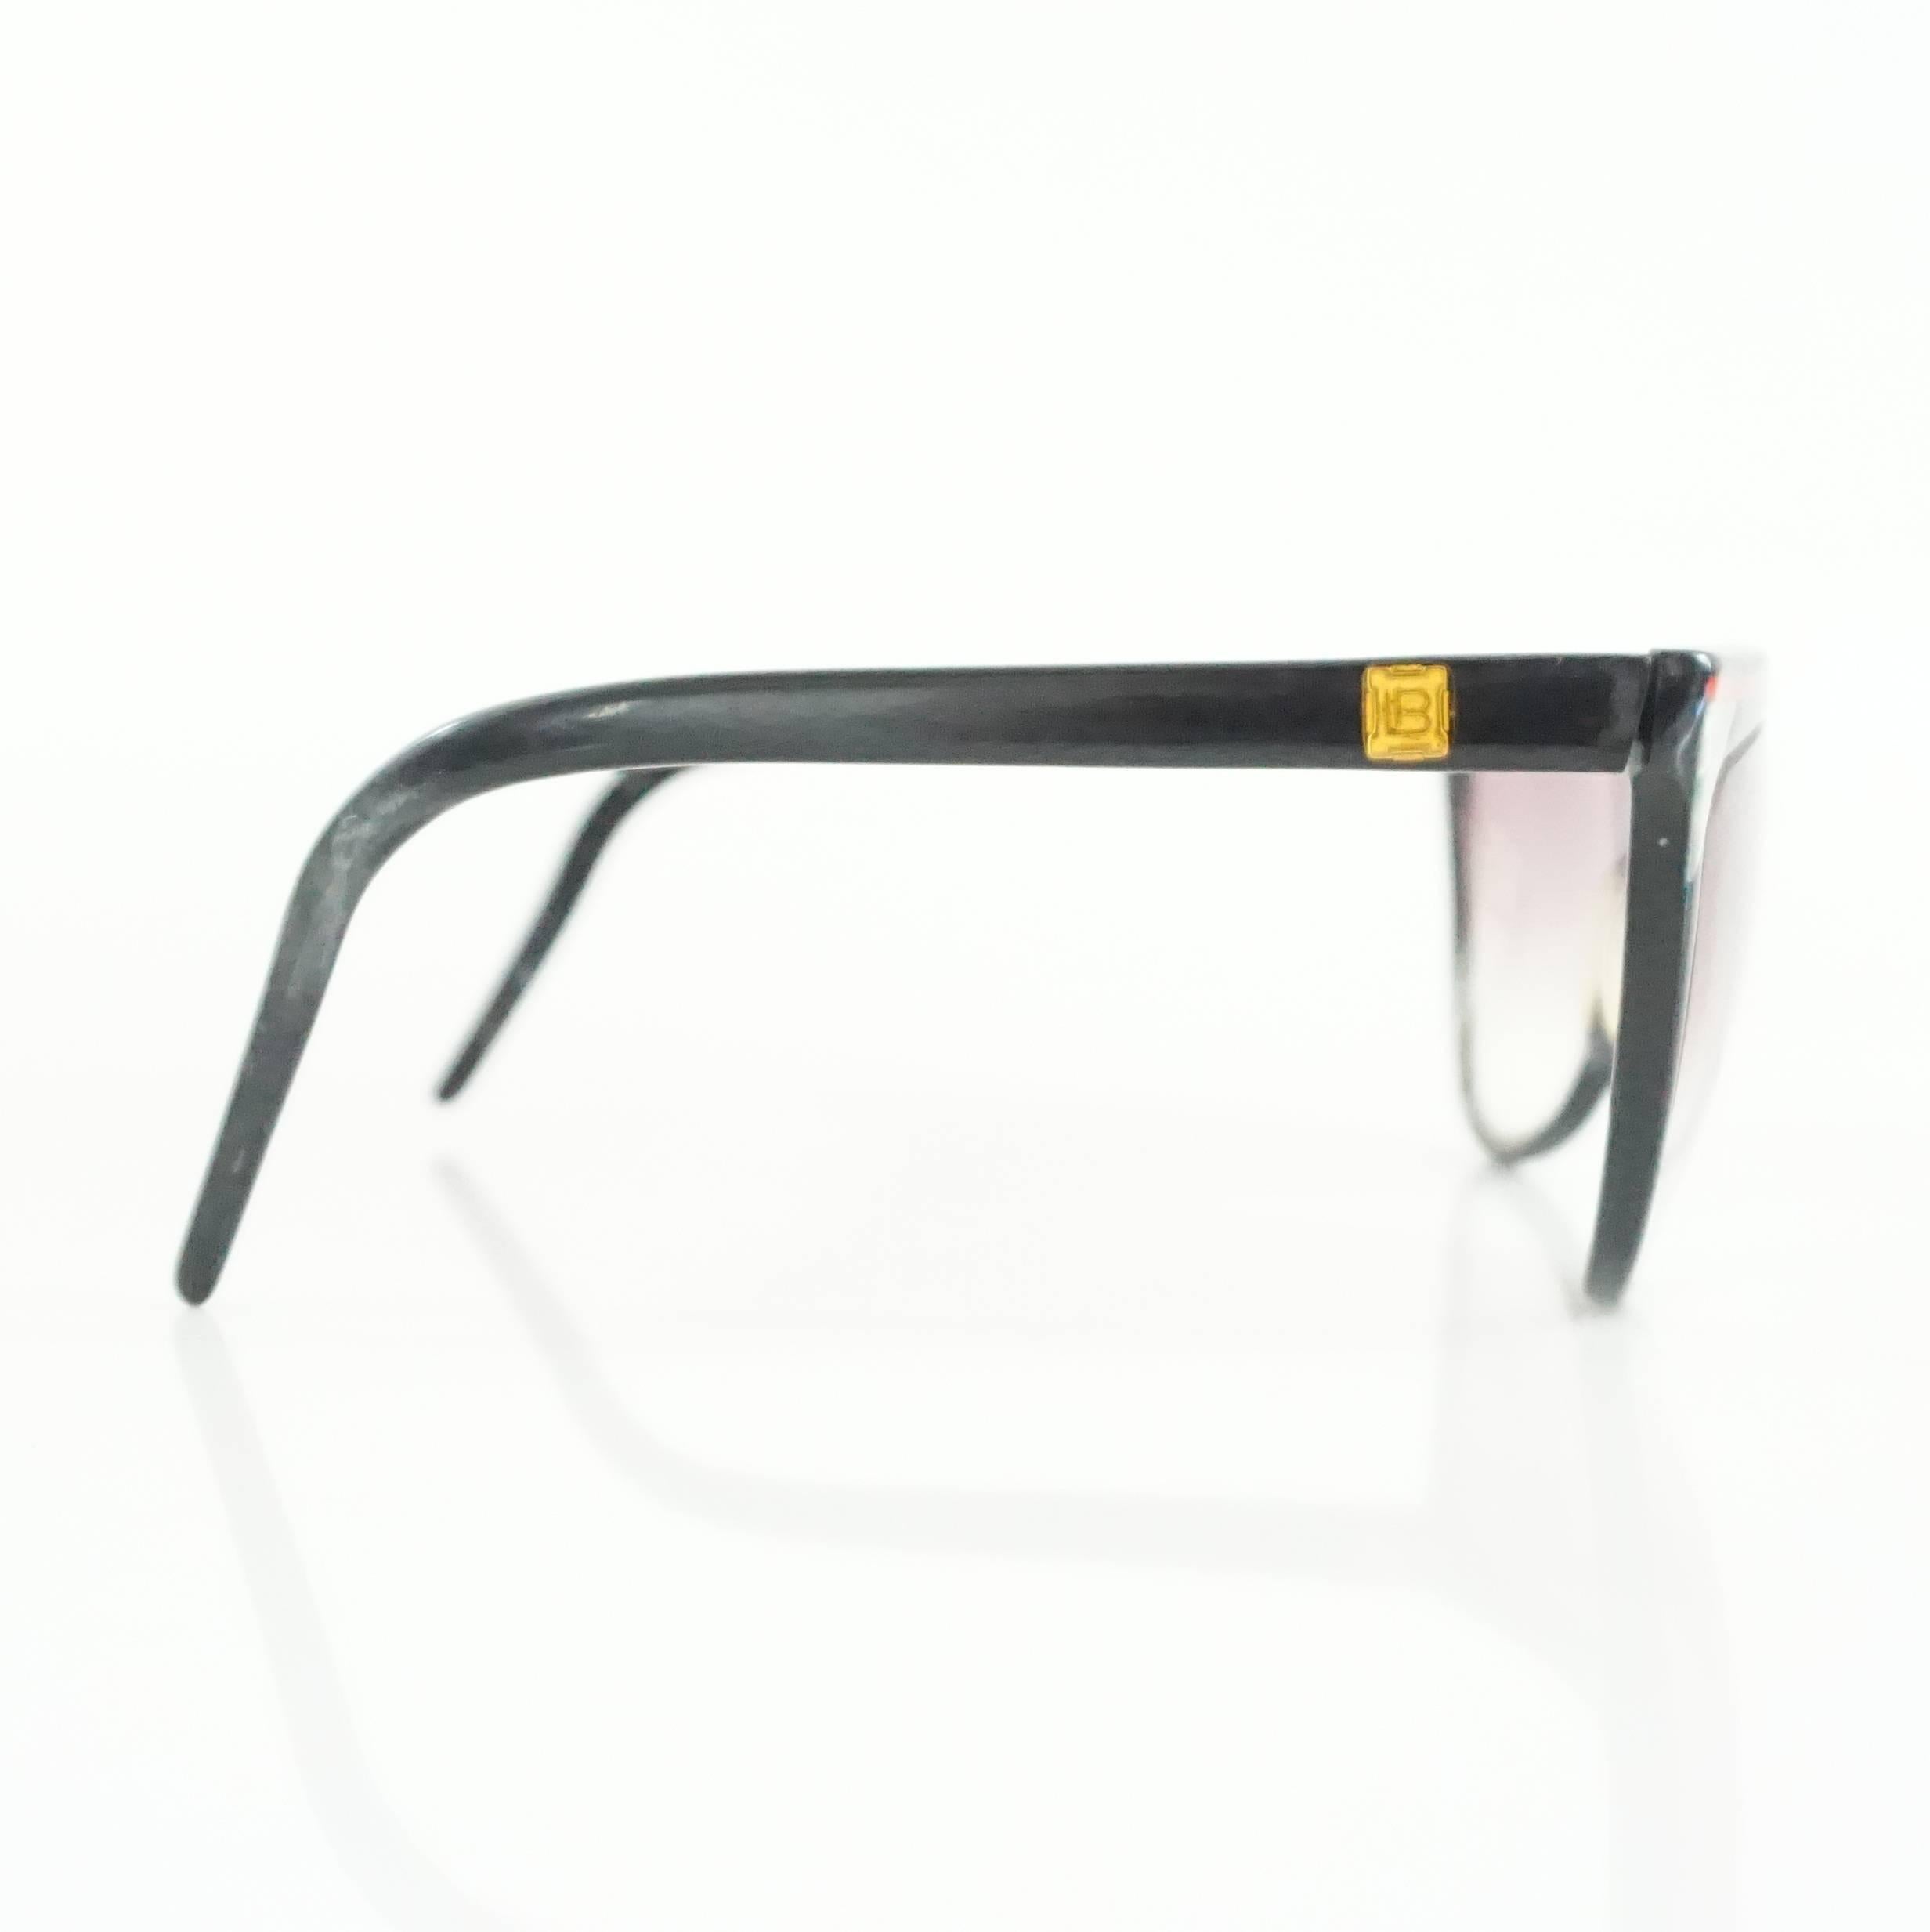 Diese Laura Biagiotti Sonnenbrille ist schwarz mit einem roten Streifen. Diese Sonnenbrille ist in gutem Zustand mit einigen Markierungen.

Messungen
Länge: 6